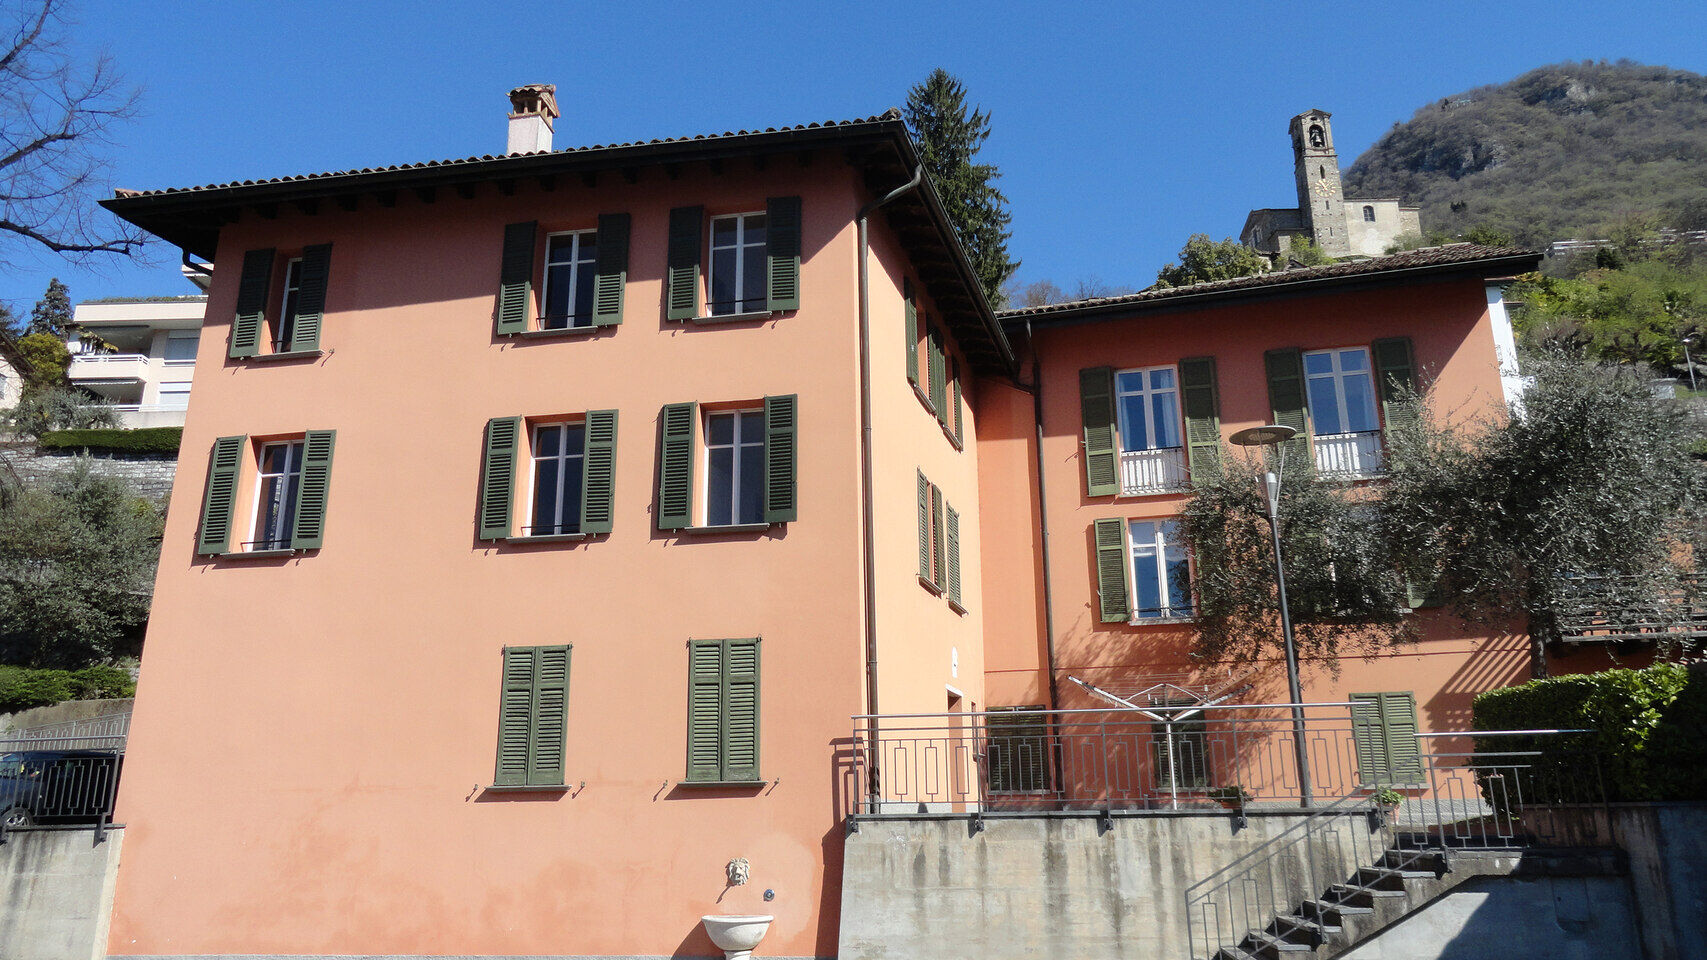 Ljudske i prirodne znanosti: Casa Carla Cattaneo u Castagnoli, na području općine Lugano, u kantonu Ticino: ugostit će Zakladu IBSA za znanstvena istraživanja, koja si postavlja nove ambiciozne ciljeve